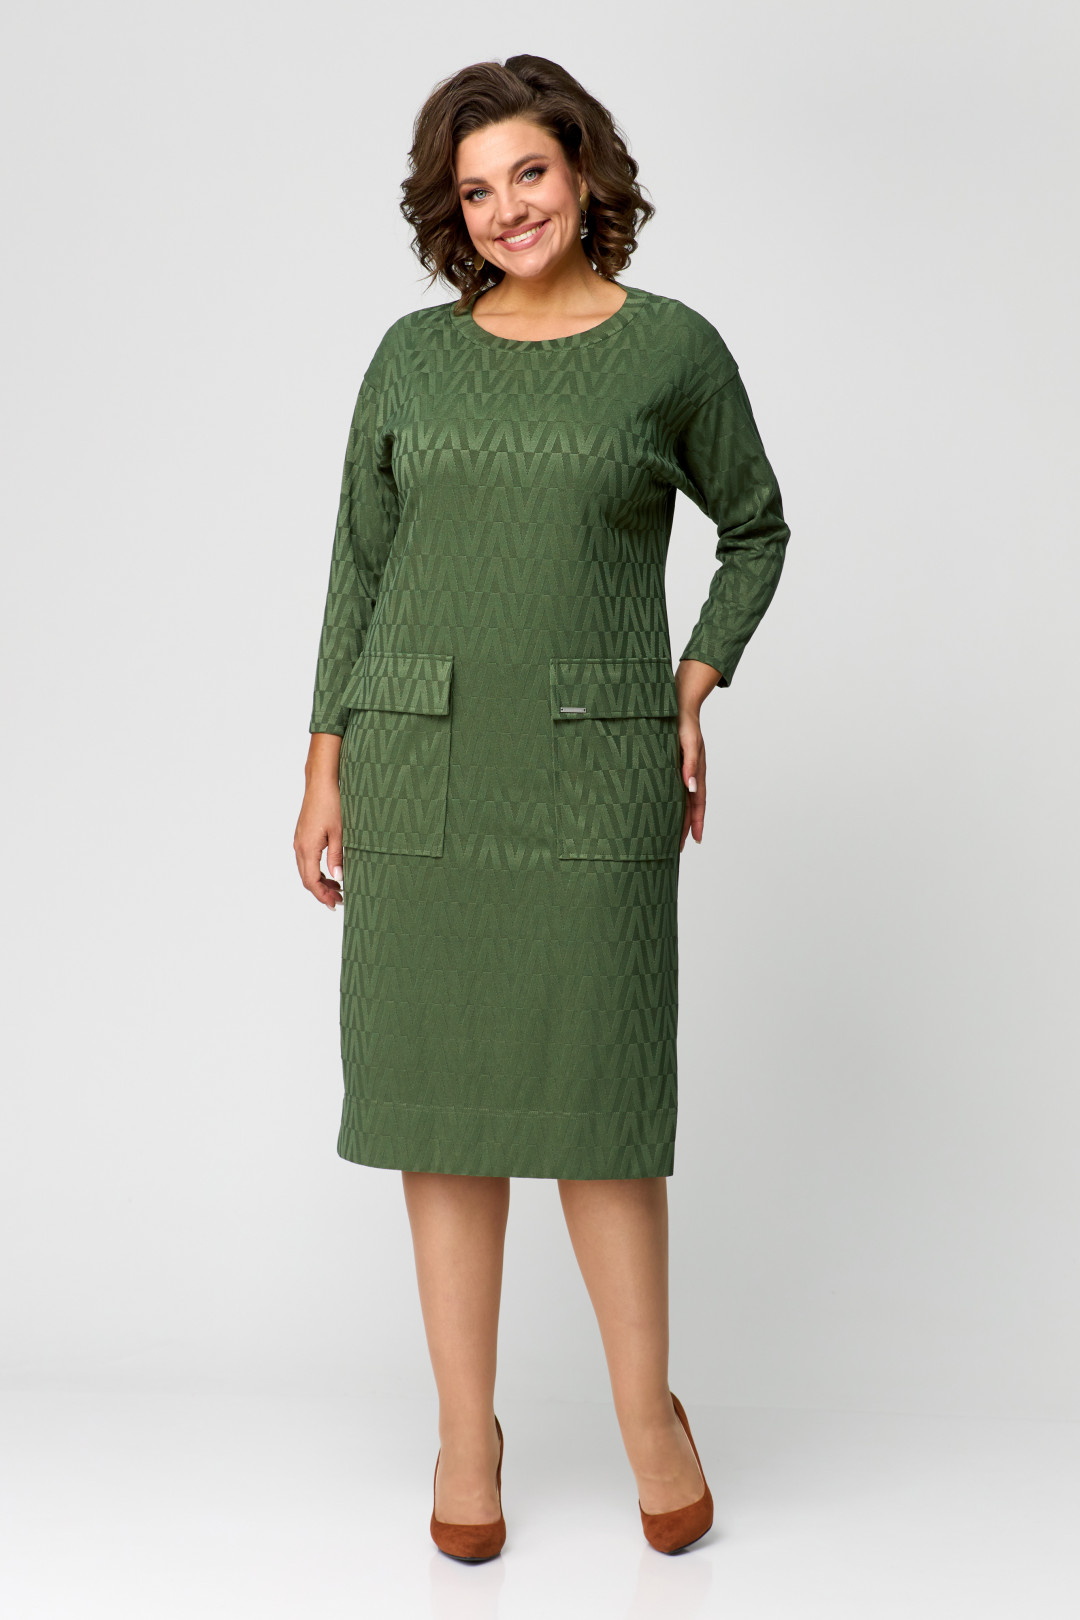 Платье Данаида 2197 зеленый